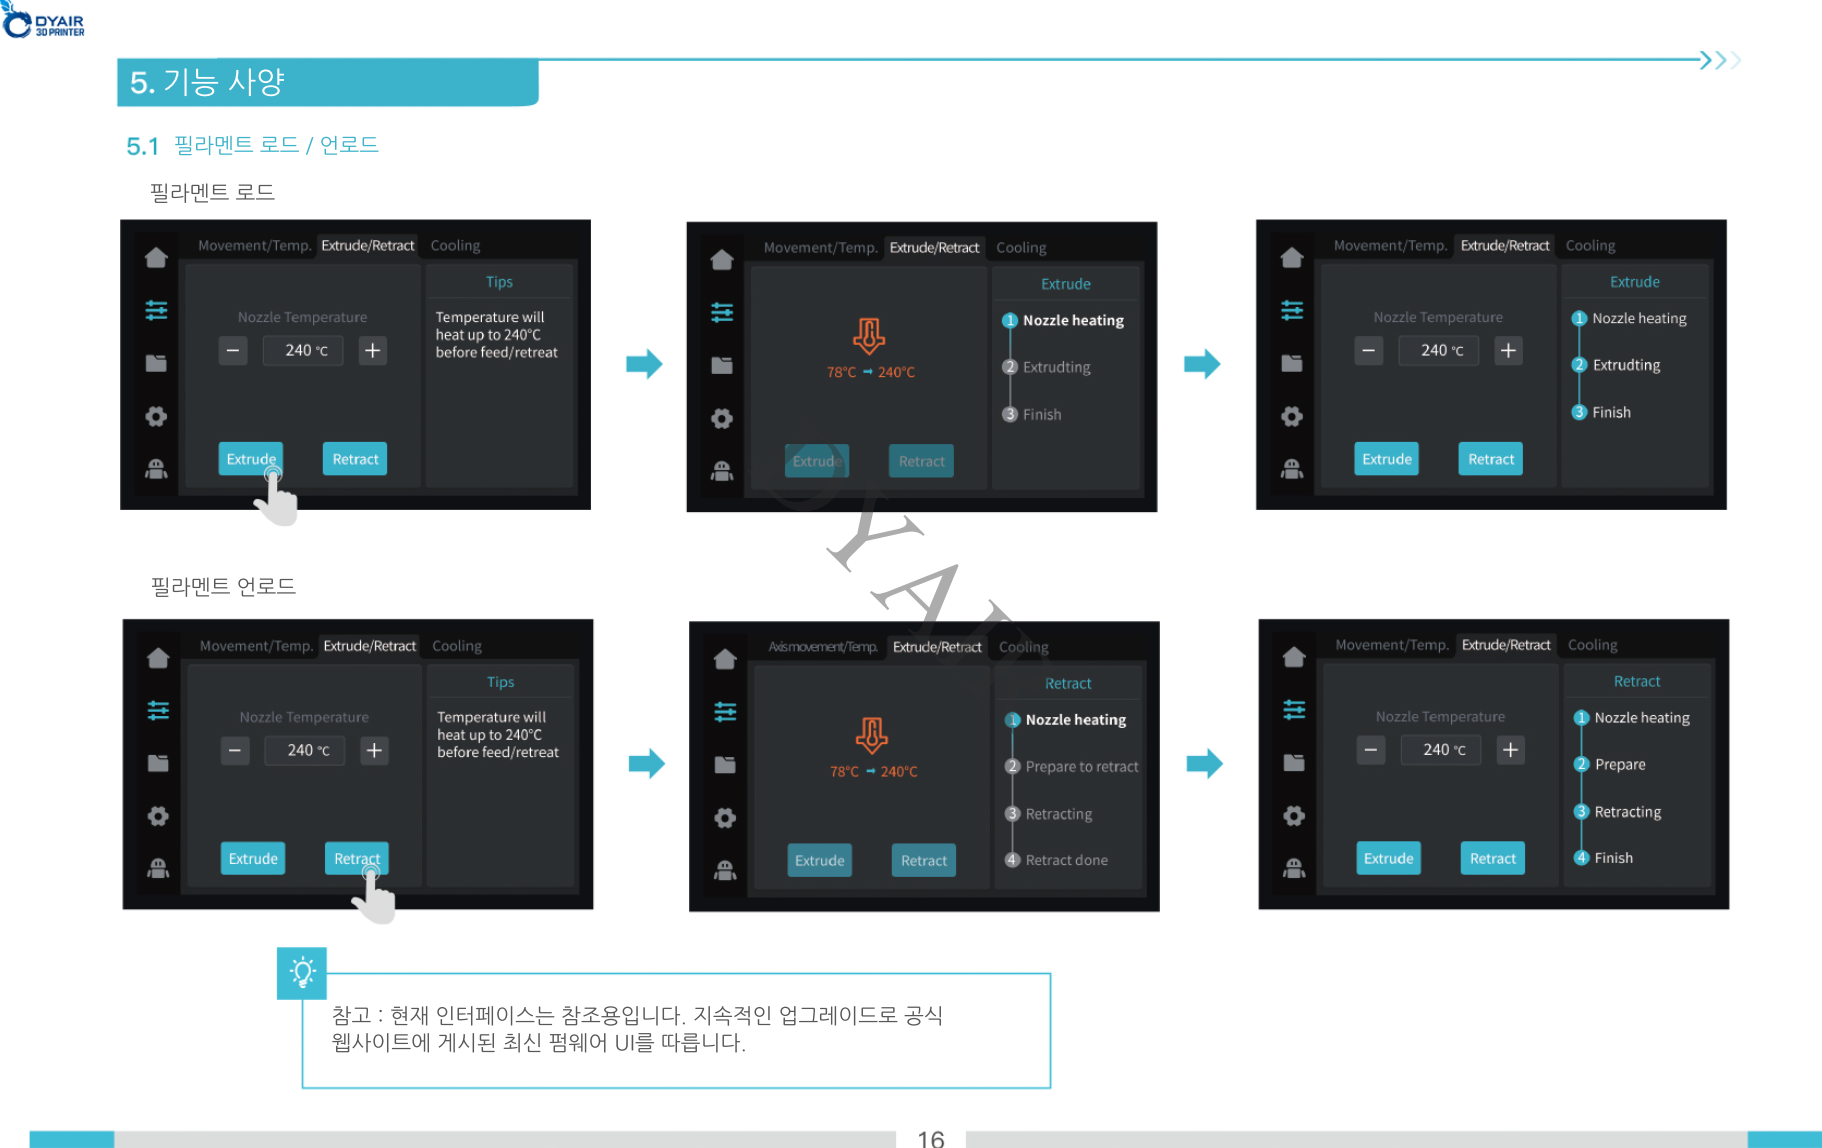 크리얼리티 K1 3D프린터 한국어 사용자 매뉴얼